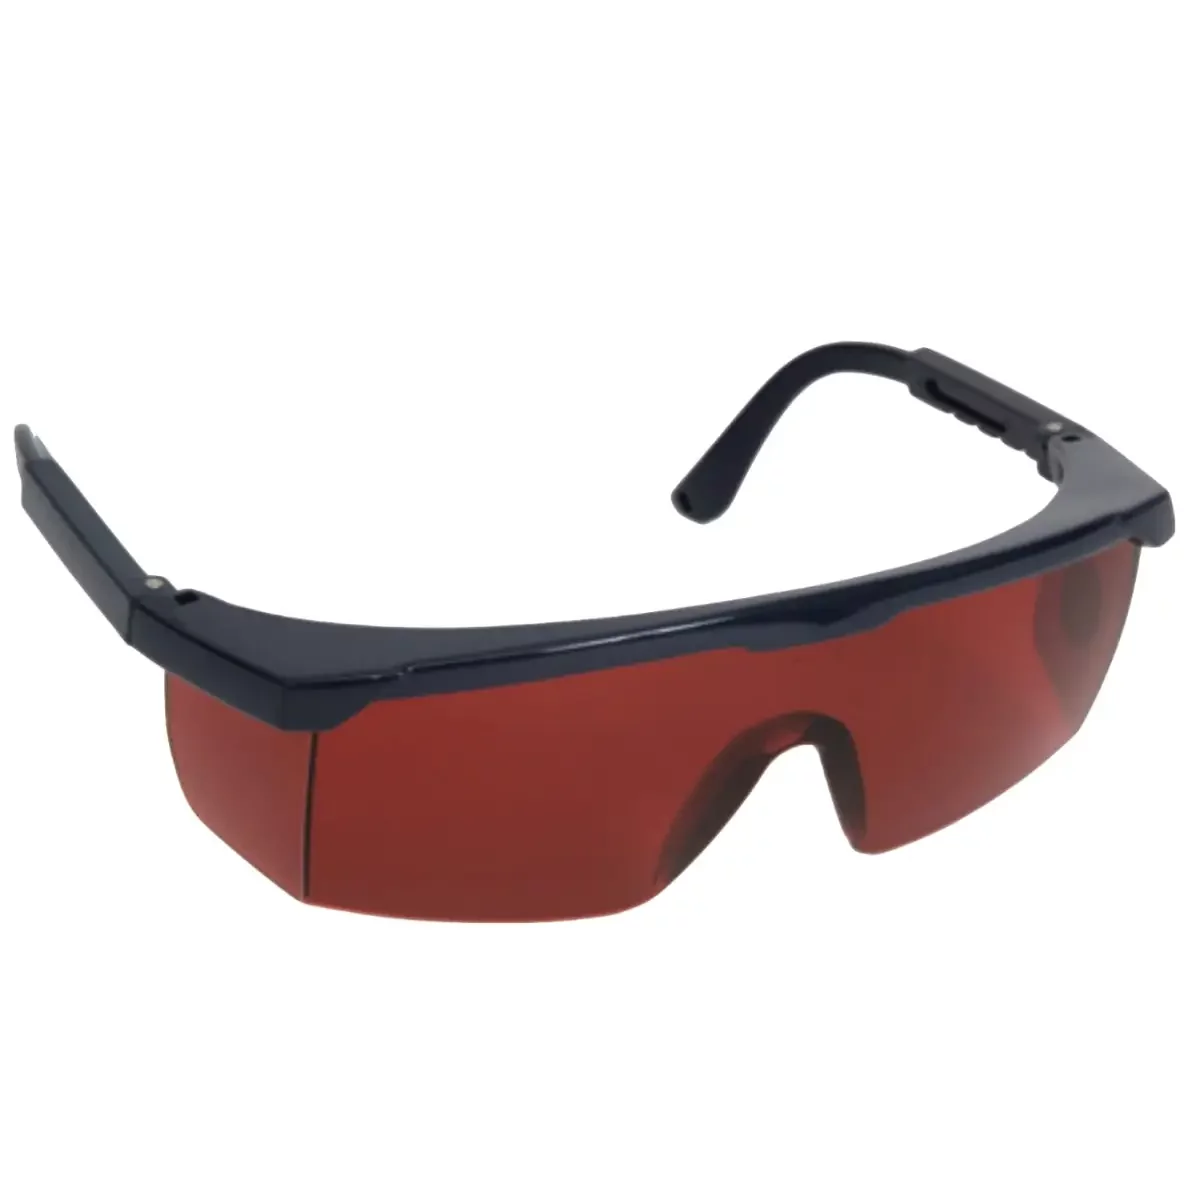 iMEX Laser Glasses - Red